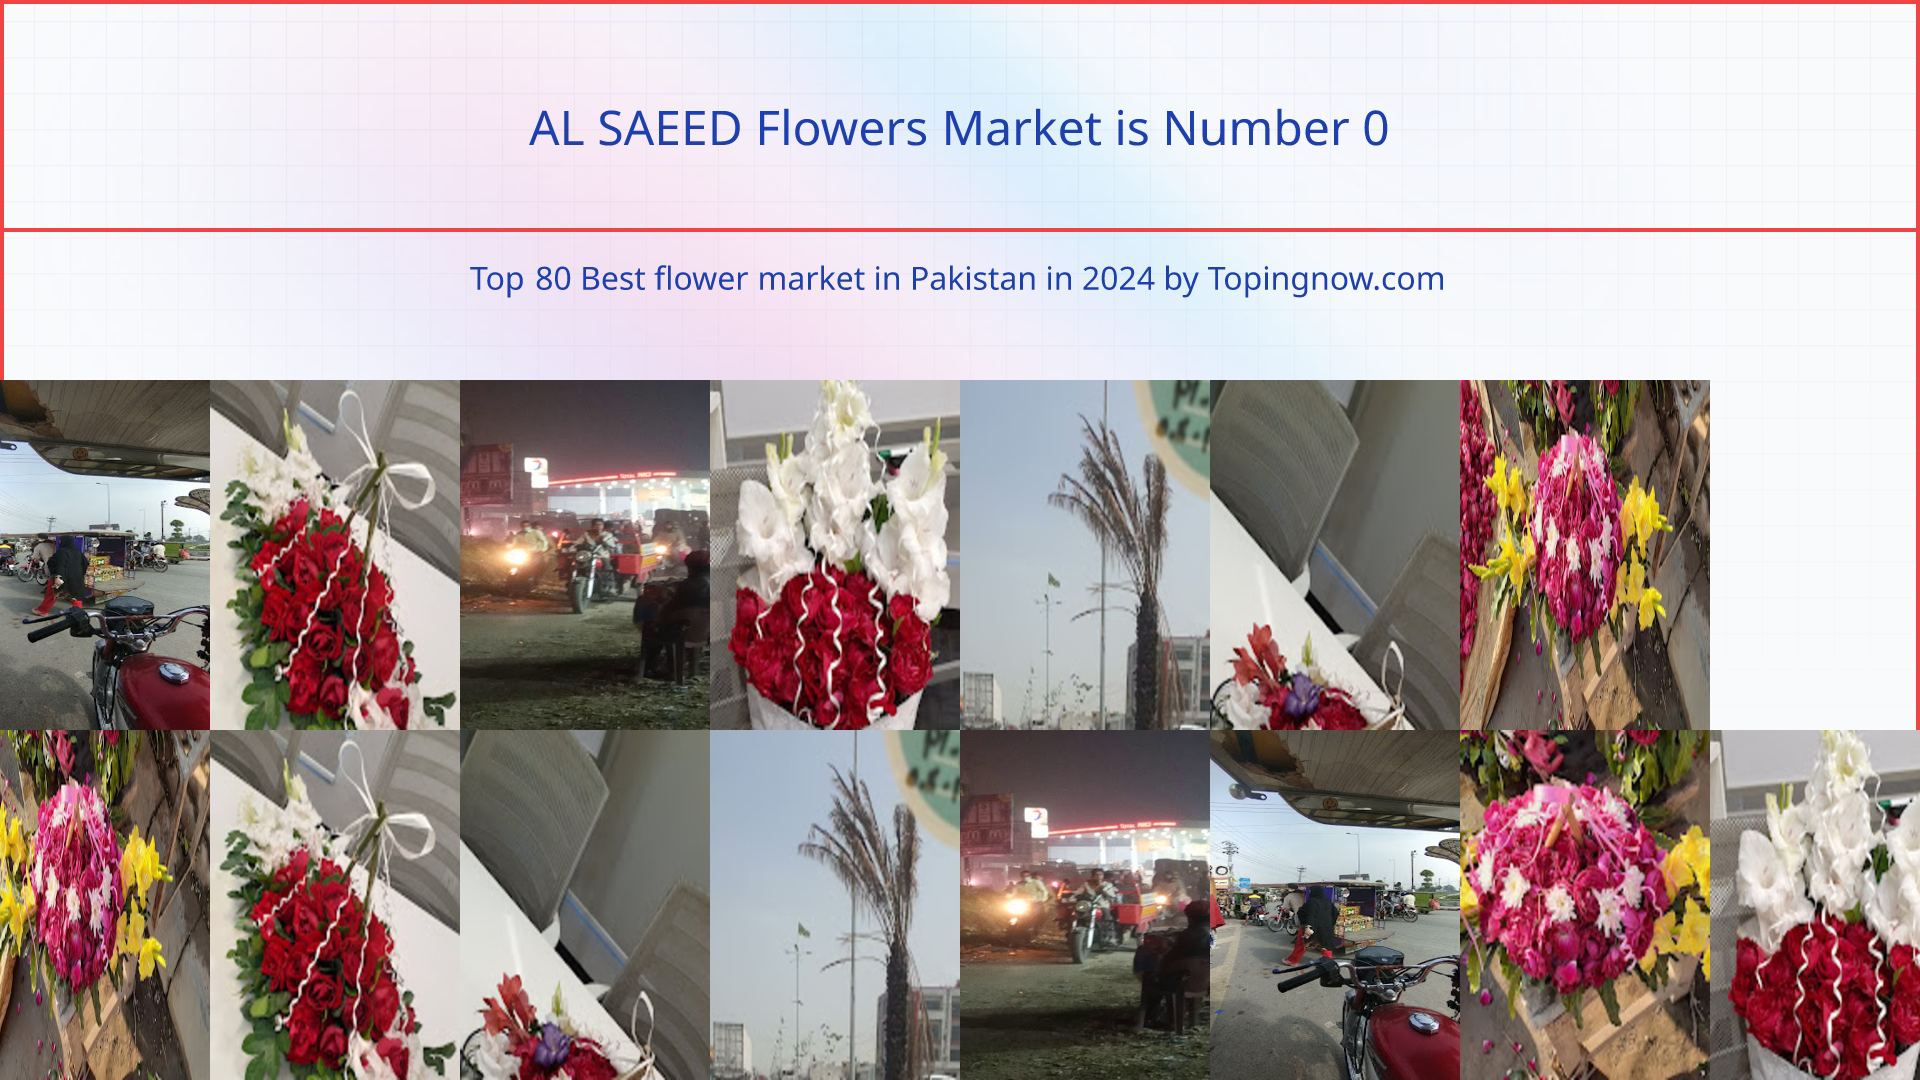 AL SAEED Flowers Market: Top 80 Best flower market in Pakistan in 2024